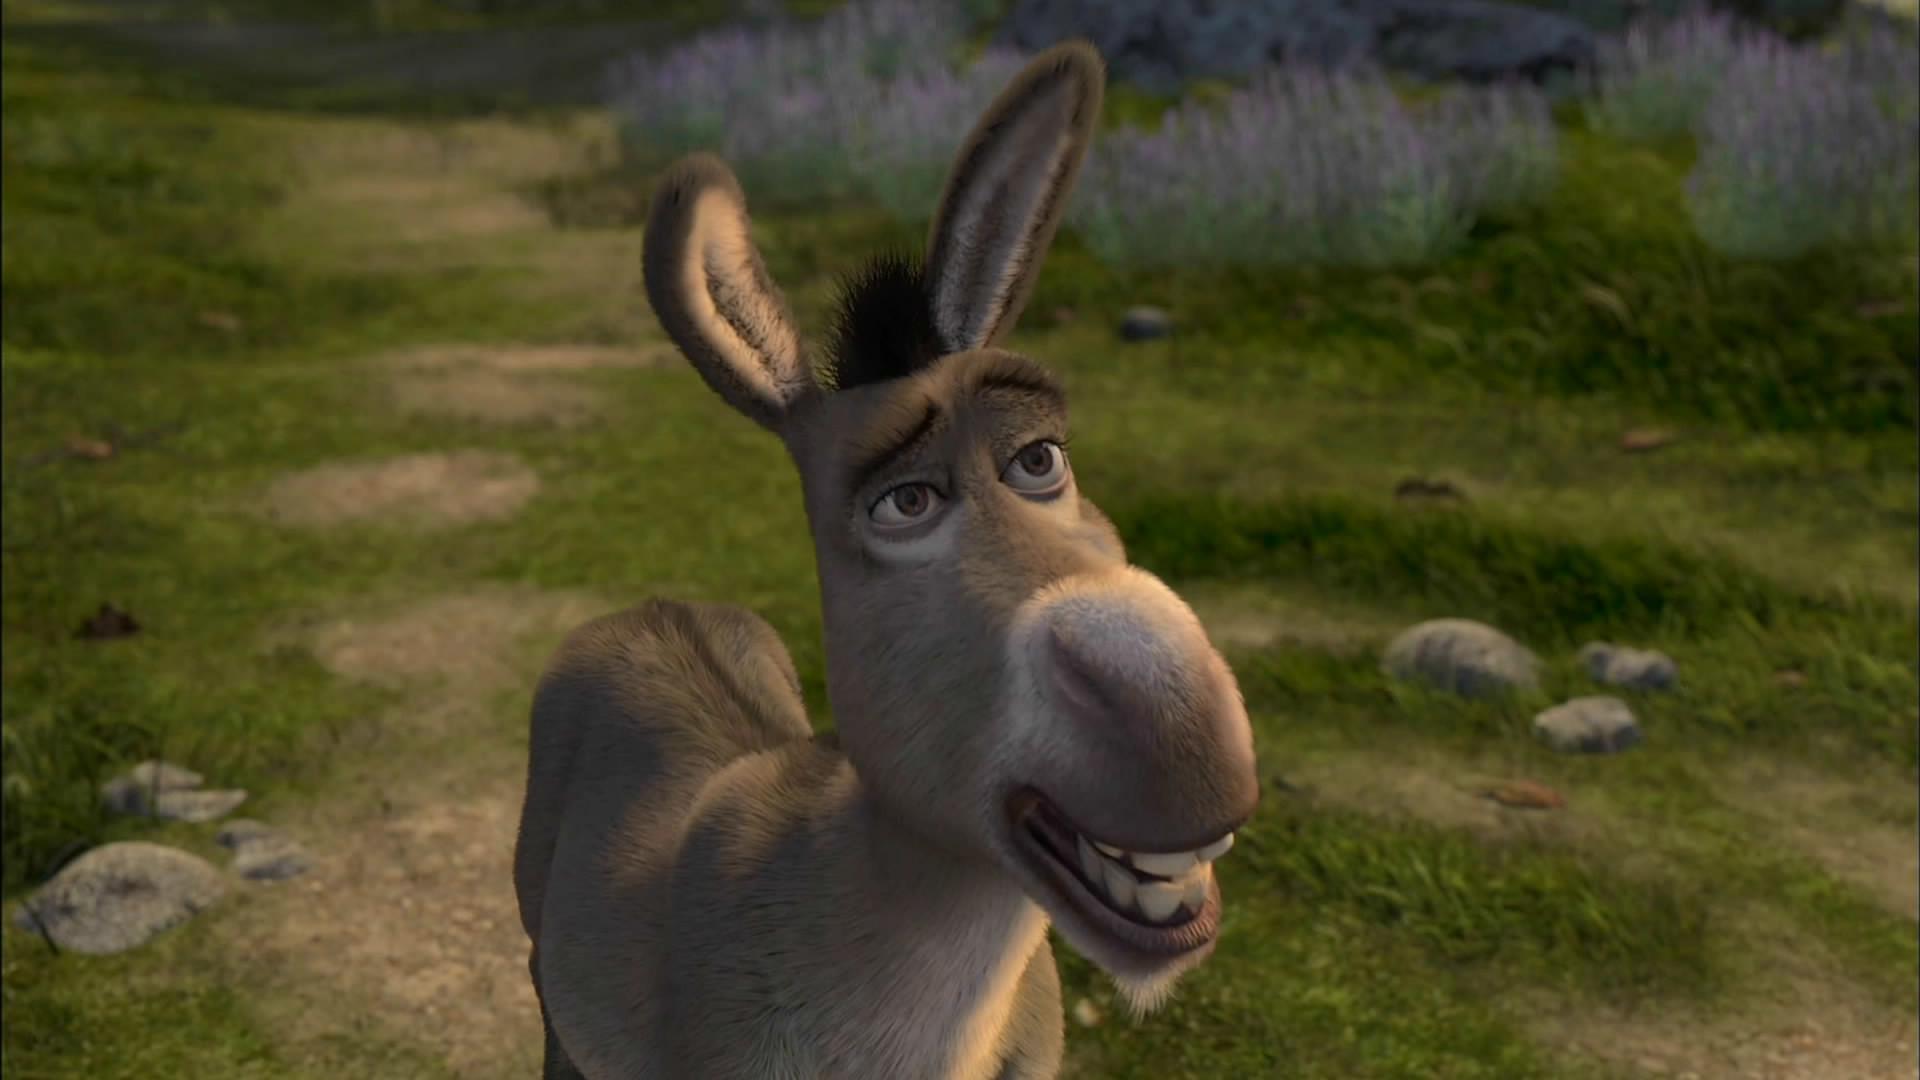 shrek donkey